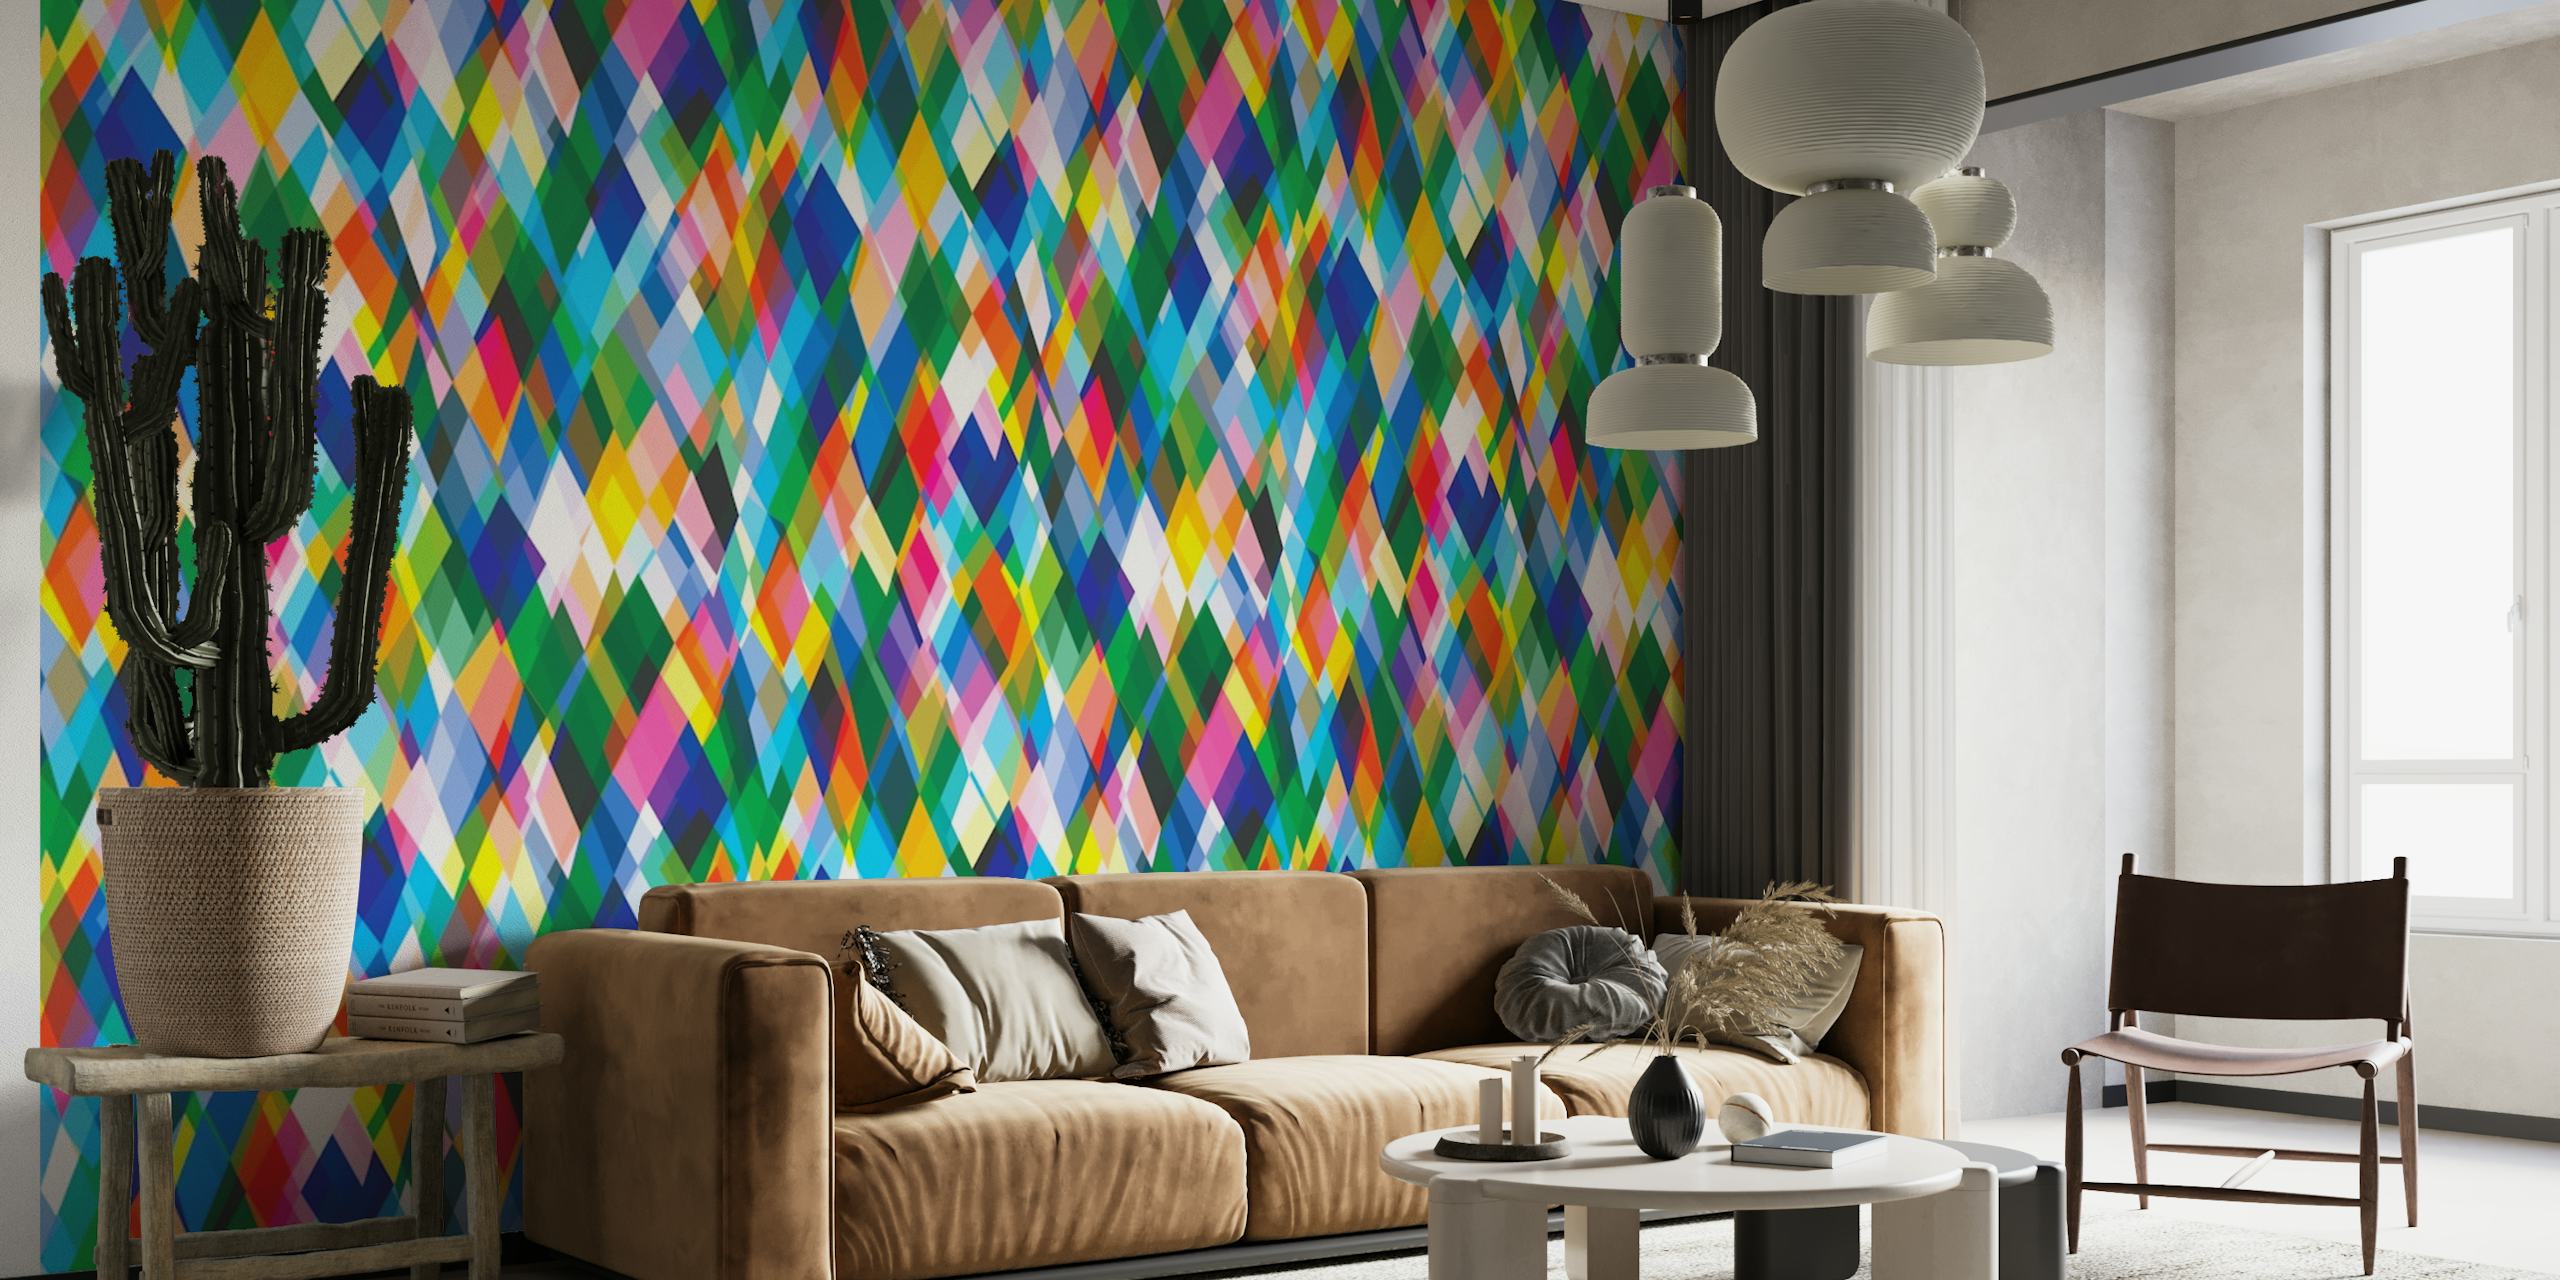 Kleurrijke muurschildering met harlekijnruitpatroon